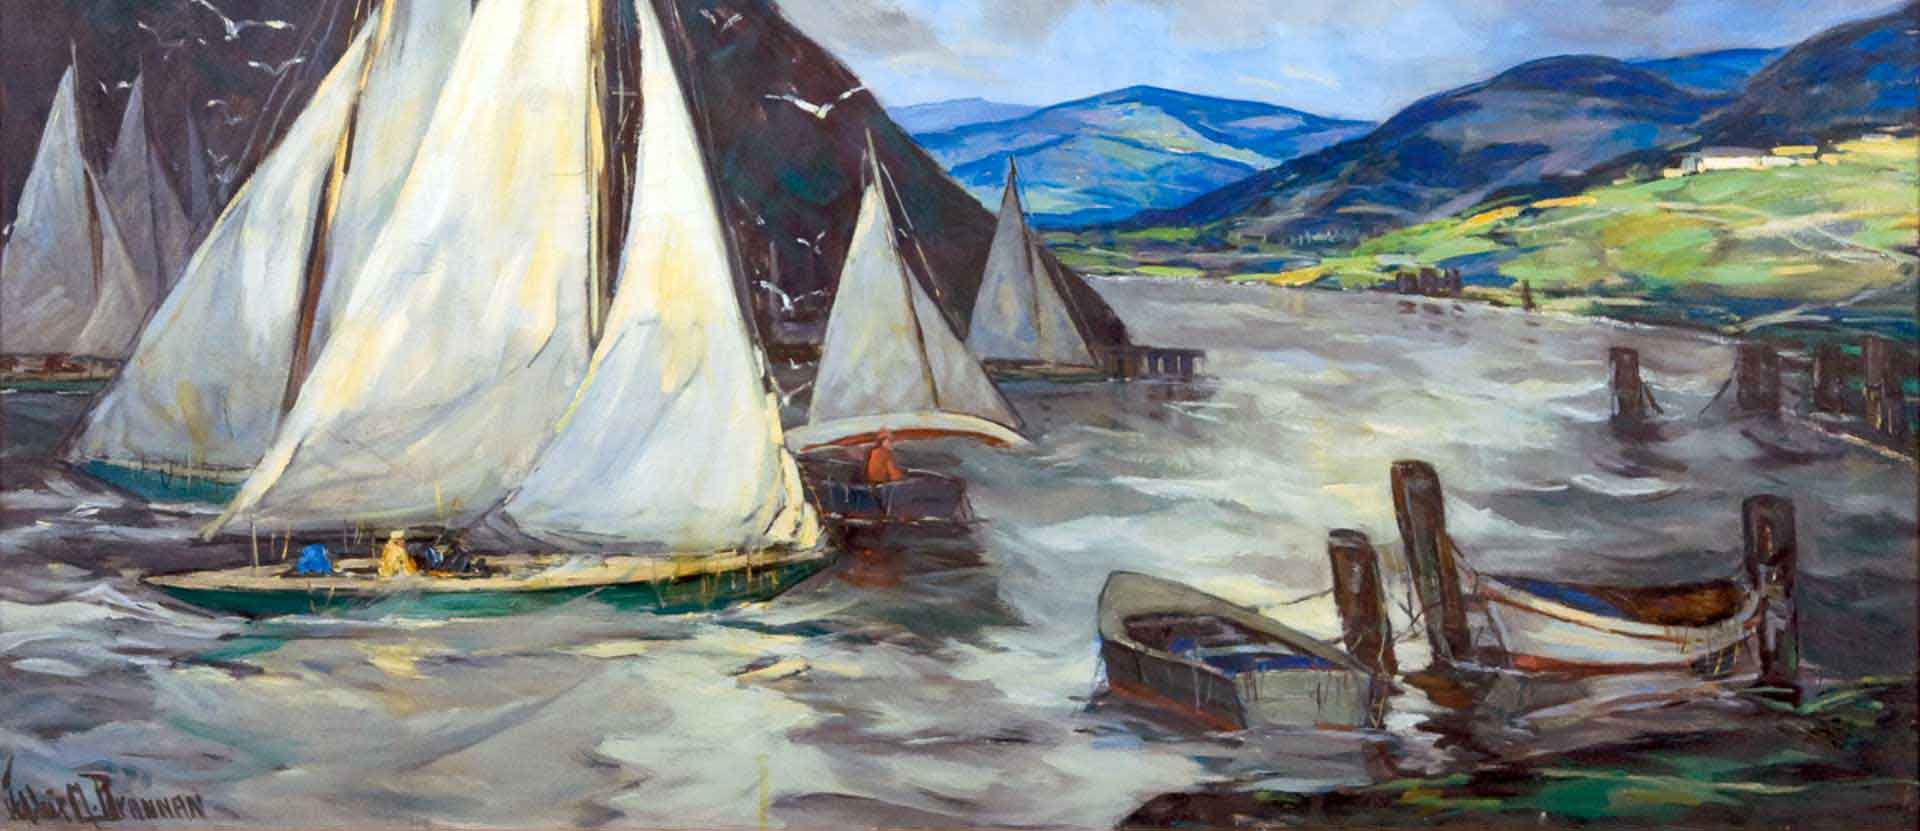 Painting of sailboats